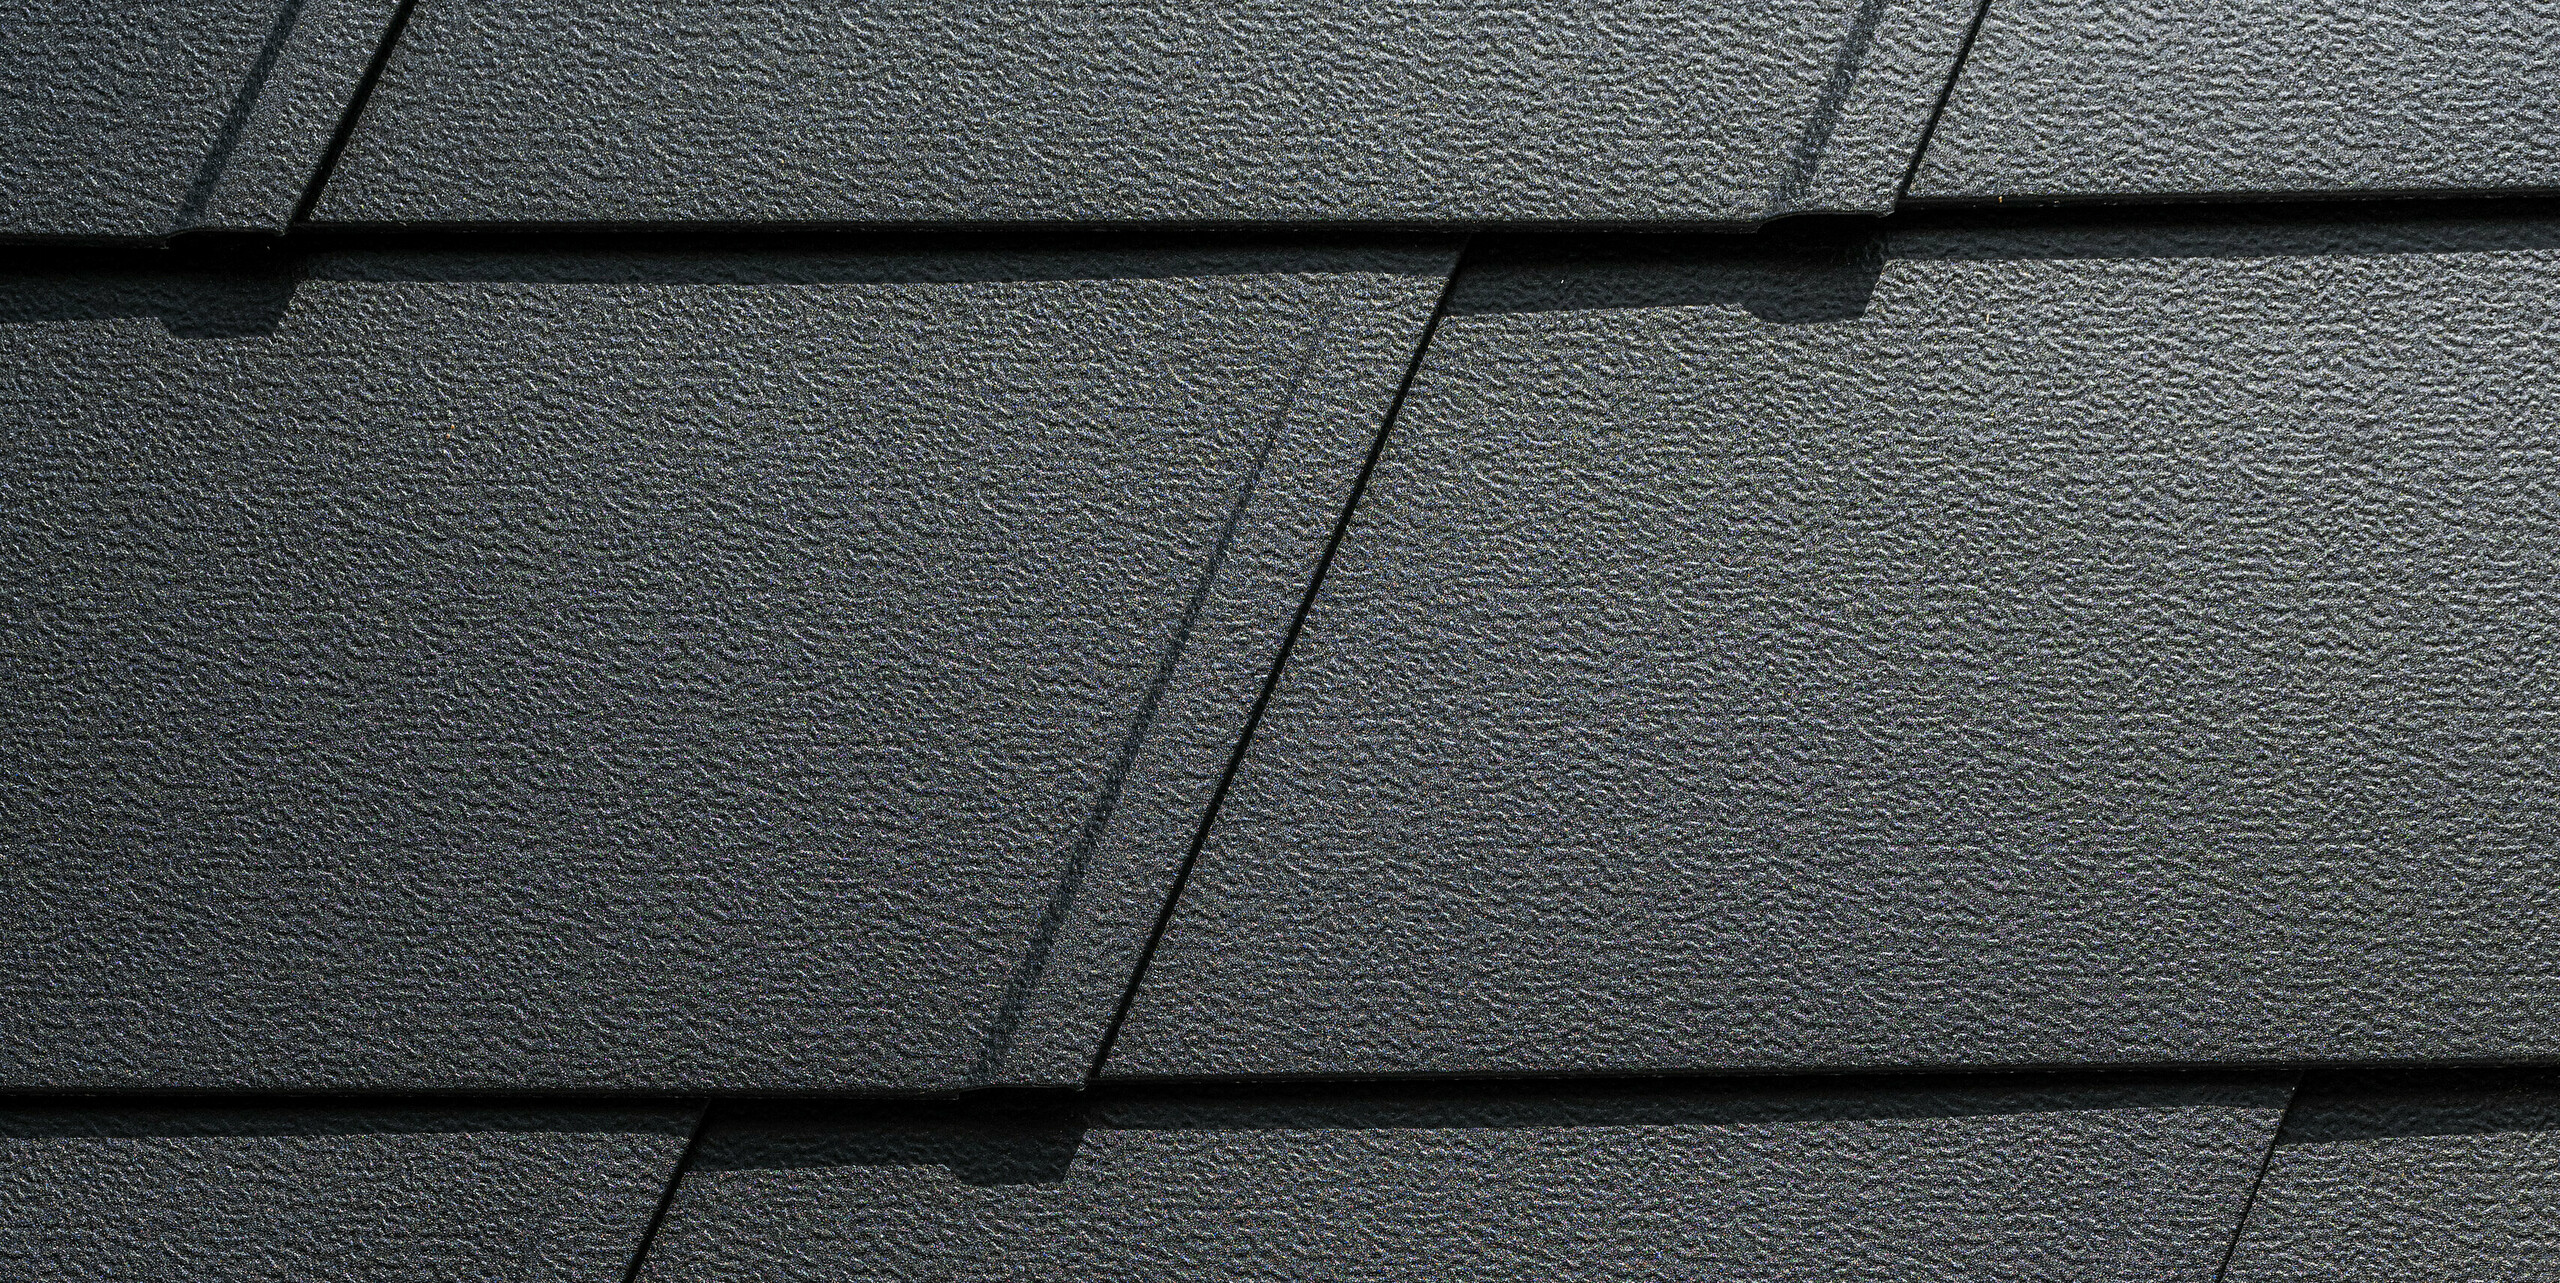 Detailaufnahme eines PREFA Fassadensystems mit schwarzen, strukturierten Aluminiumplatten. Die Wandschindeln sind in einem gleichmäßigen Muster angeordnet, das durch präzise Linien und Fugen betont wird. Dies verleiht der Oberfläche ein modernes und elegantes Erscheinungsbild, das sowohl funktional als auch ästhetisch ansprechend ist.